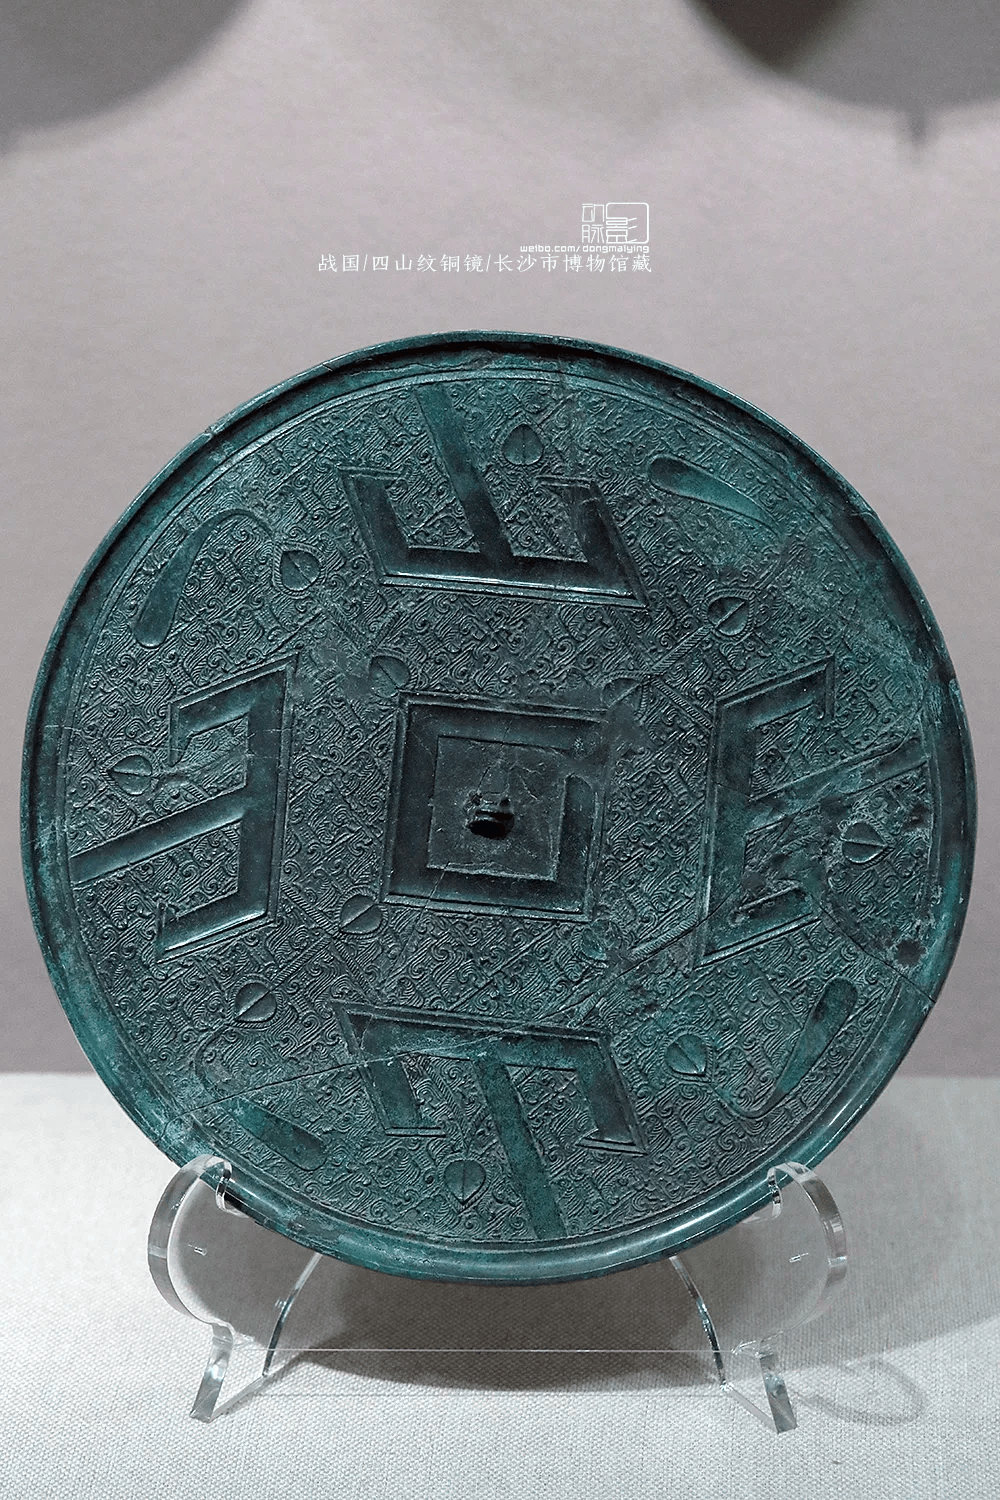 战国 三山字纹镜 山西青铜博物馆藏战国时期铜镜纹饰内容丰富,有纯地